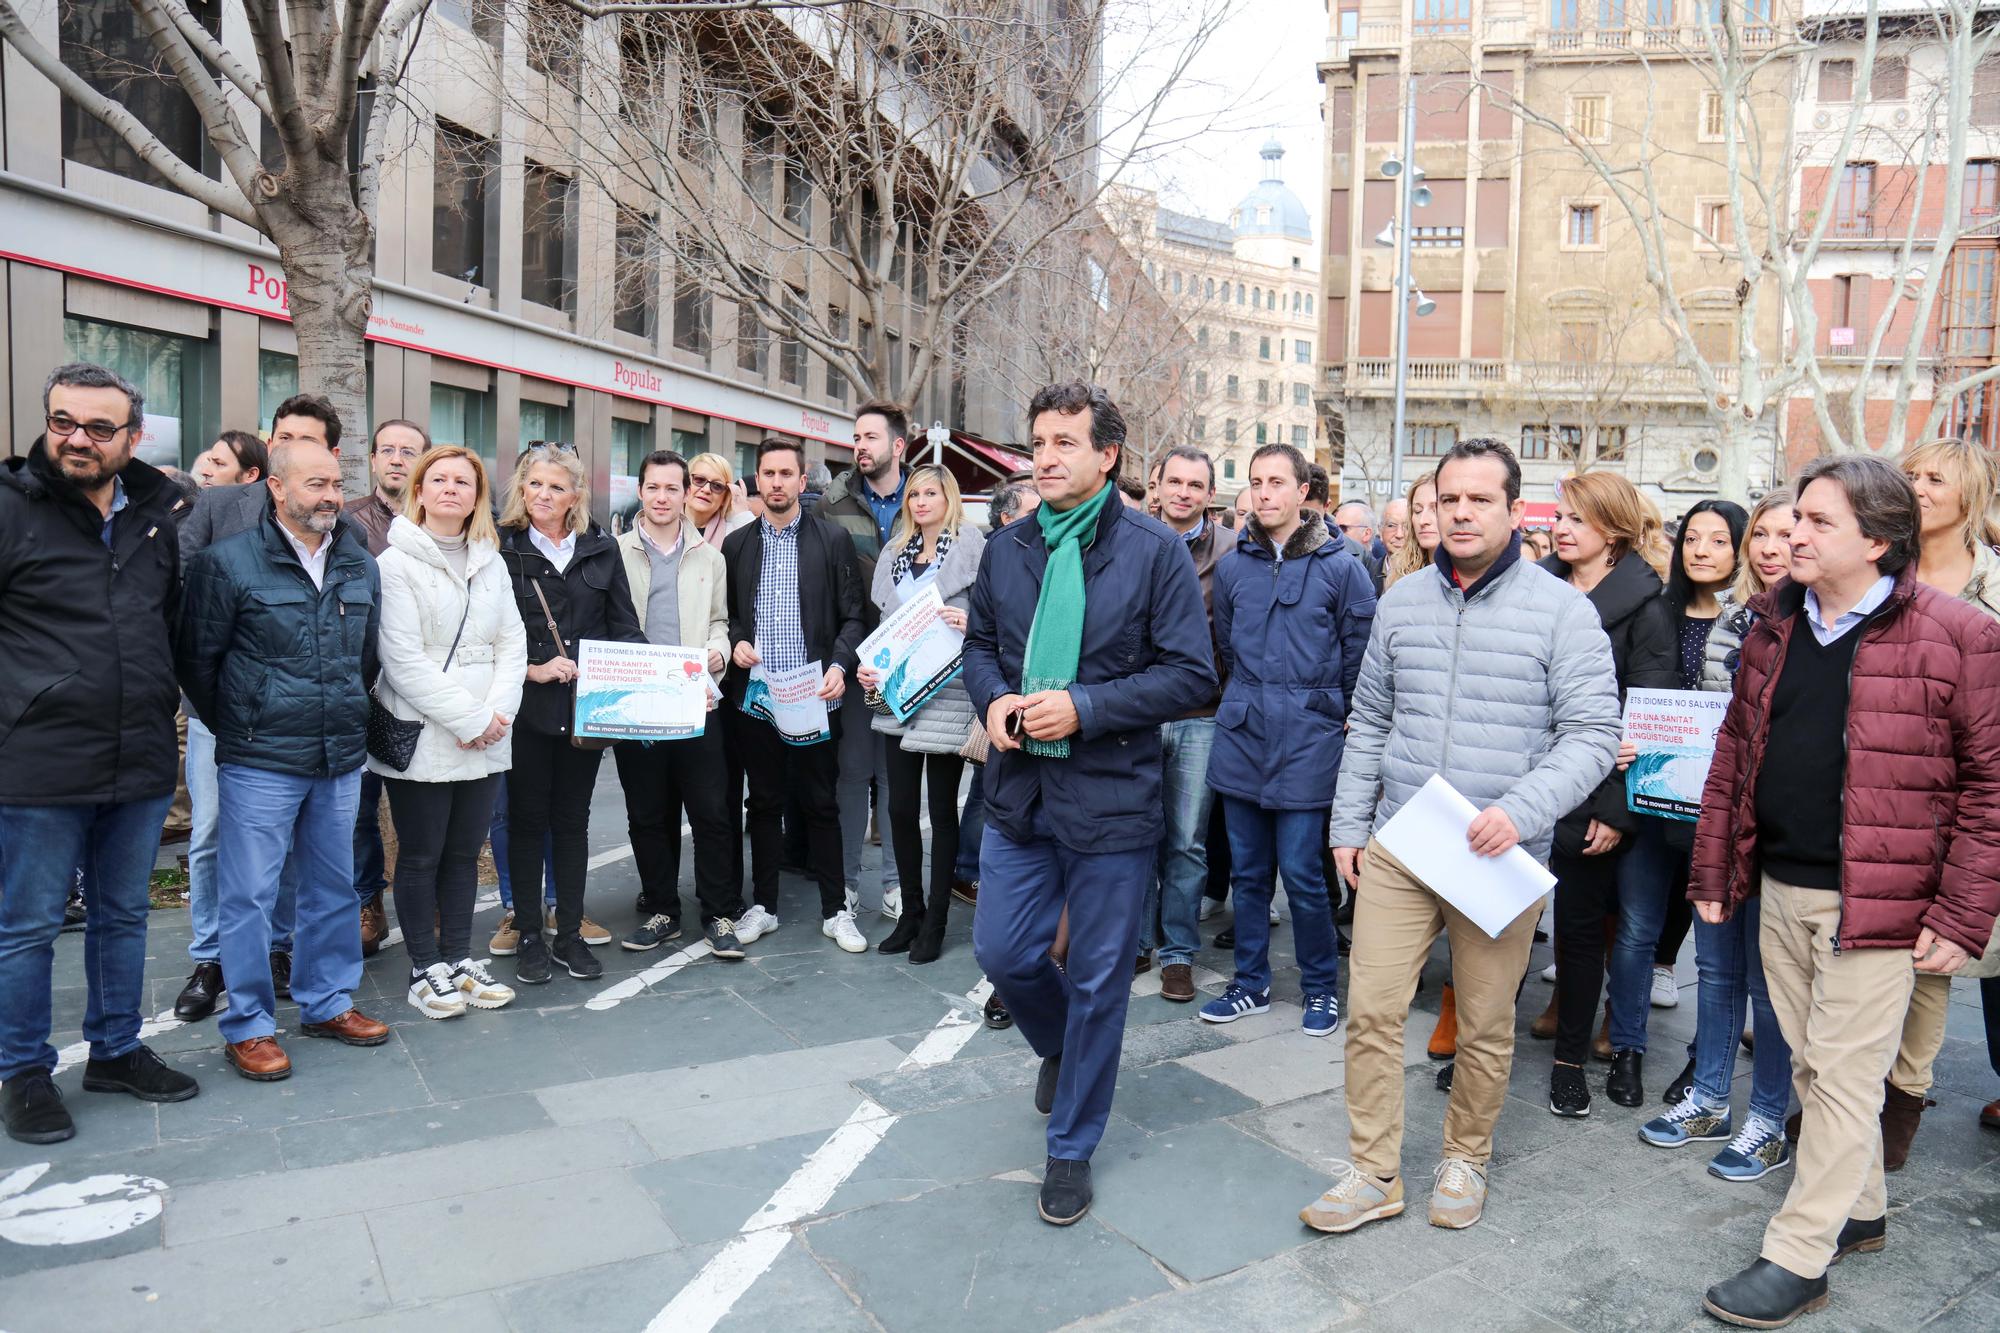 Biel Company abandona la presidencia del PP en Baleares: las fotos de cuatro años  al frente del partido